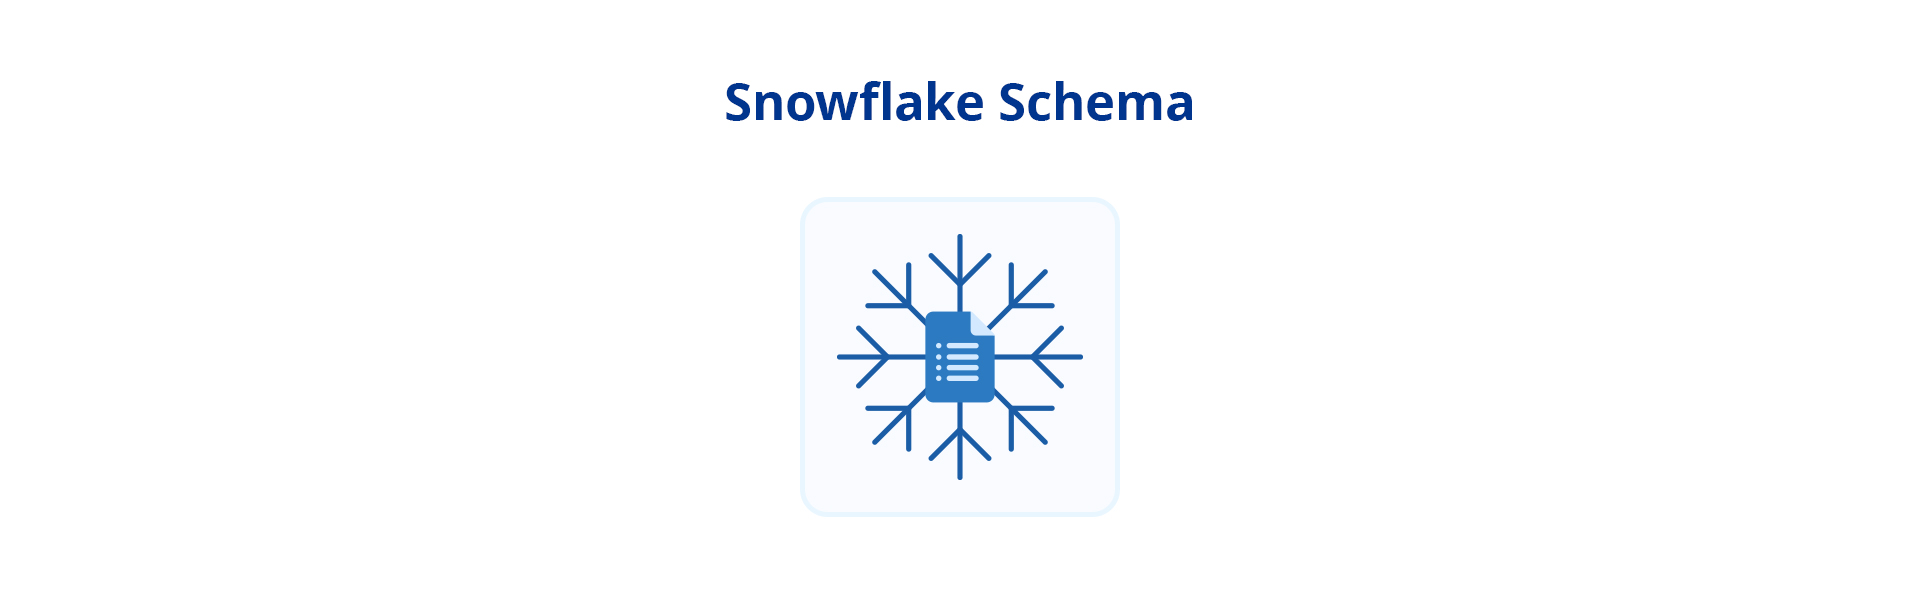 Star Schema vs. Snowflake Schema